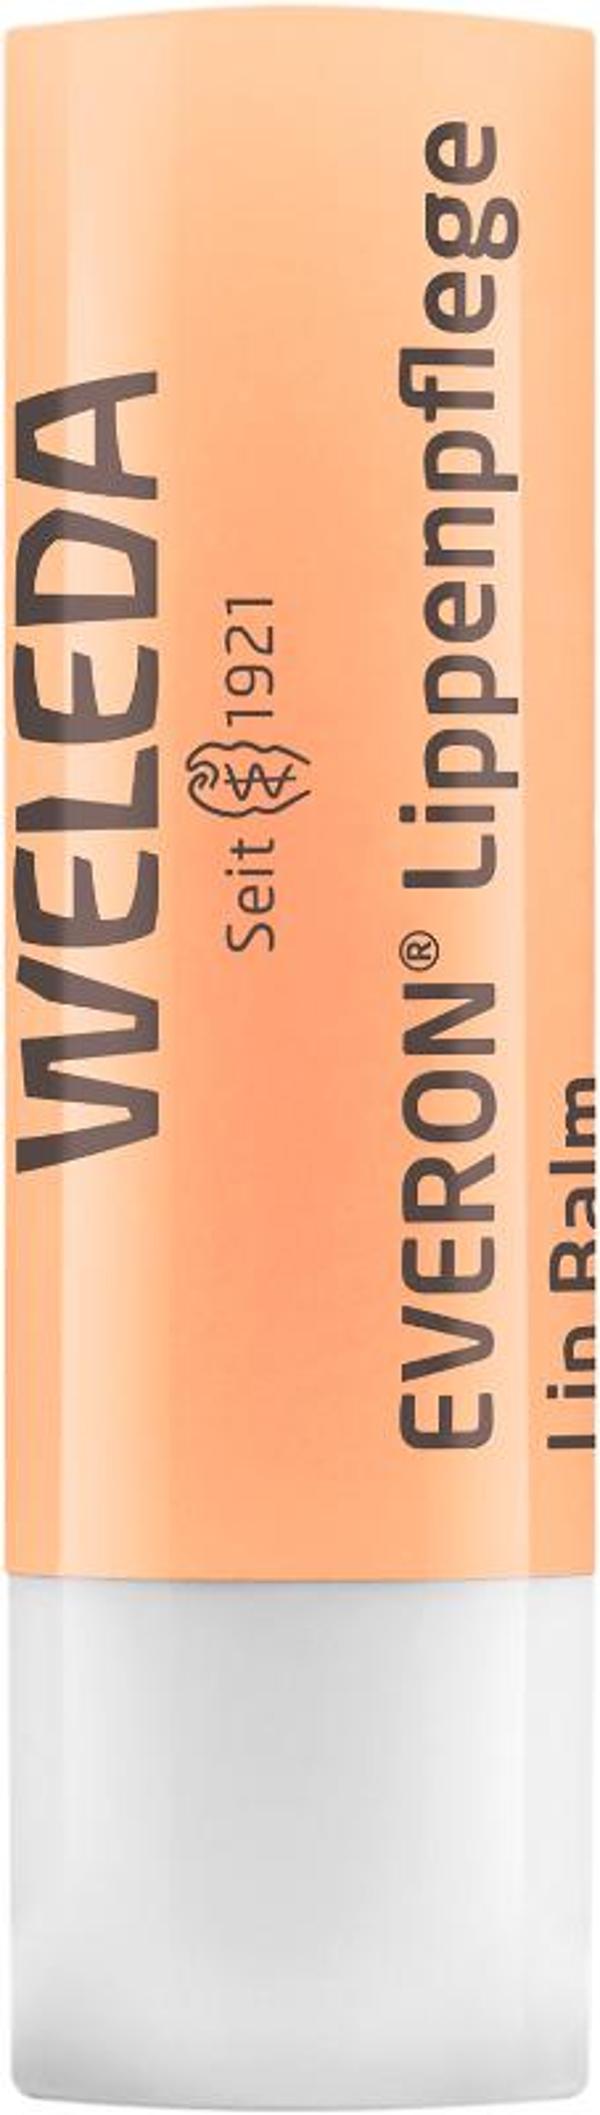 Produktfoto zu EVERON Lippenpflege Stift Weleda